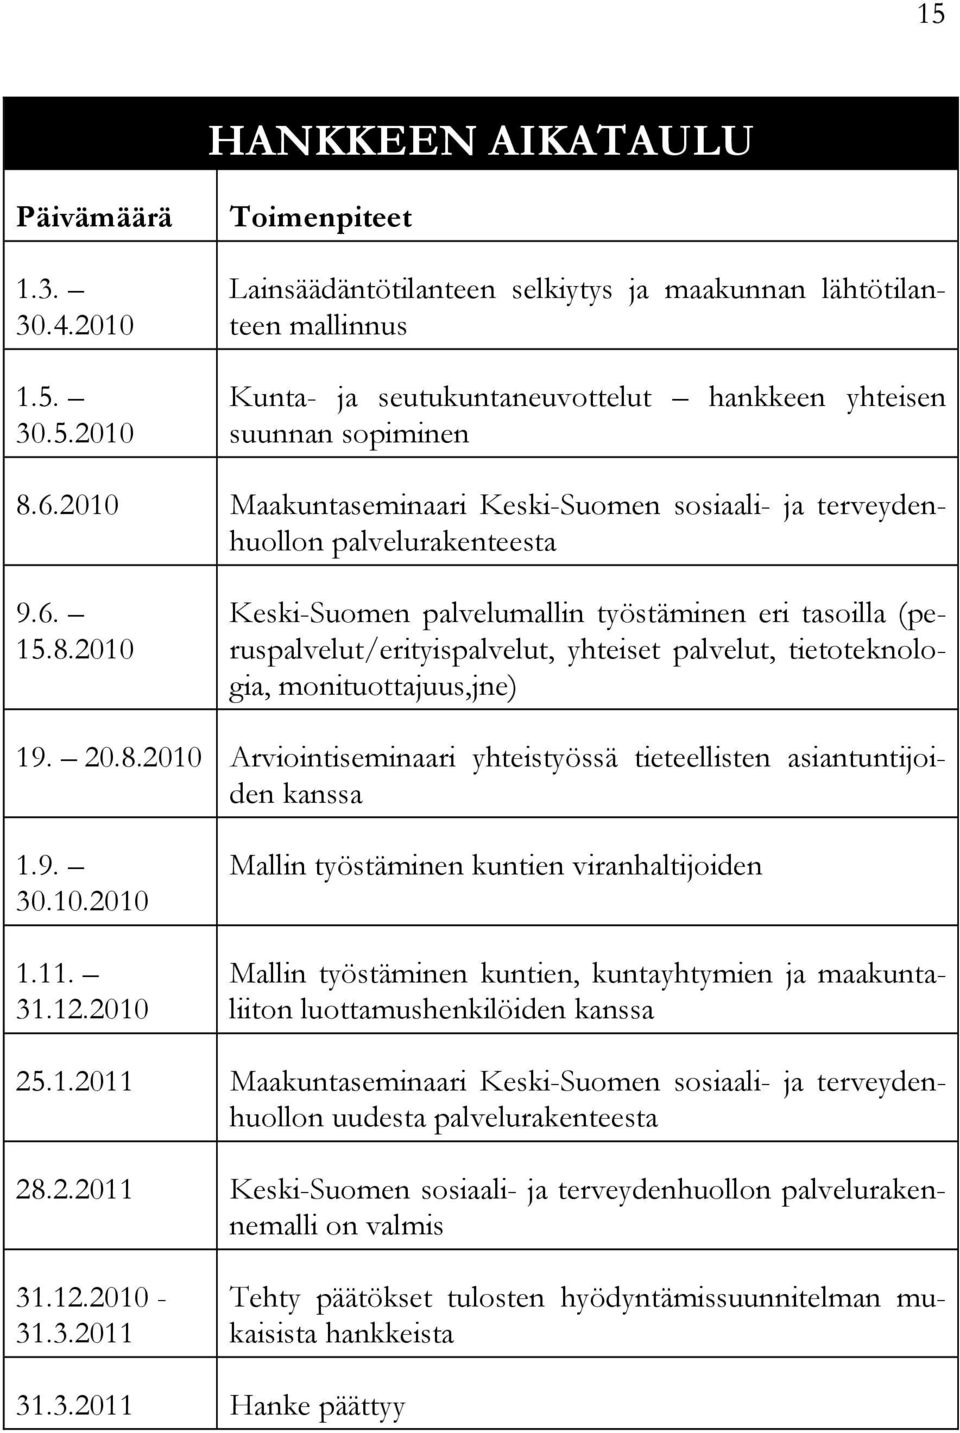 2010 Keski-Suomen palvelumallin työstäminen eri tasoilla (peruspalvelut/erityispalvelut, yhteiset palvelut, tietoteknologia, monituottajuus,jne) 19. 20.8.